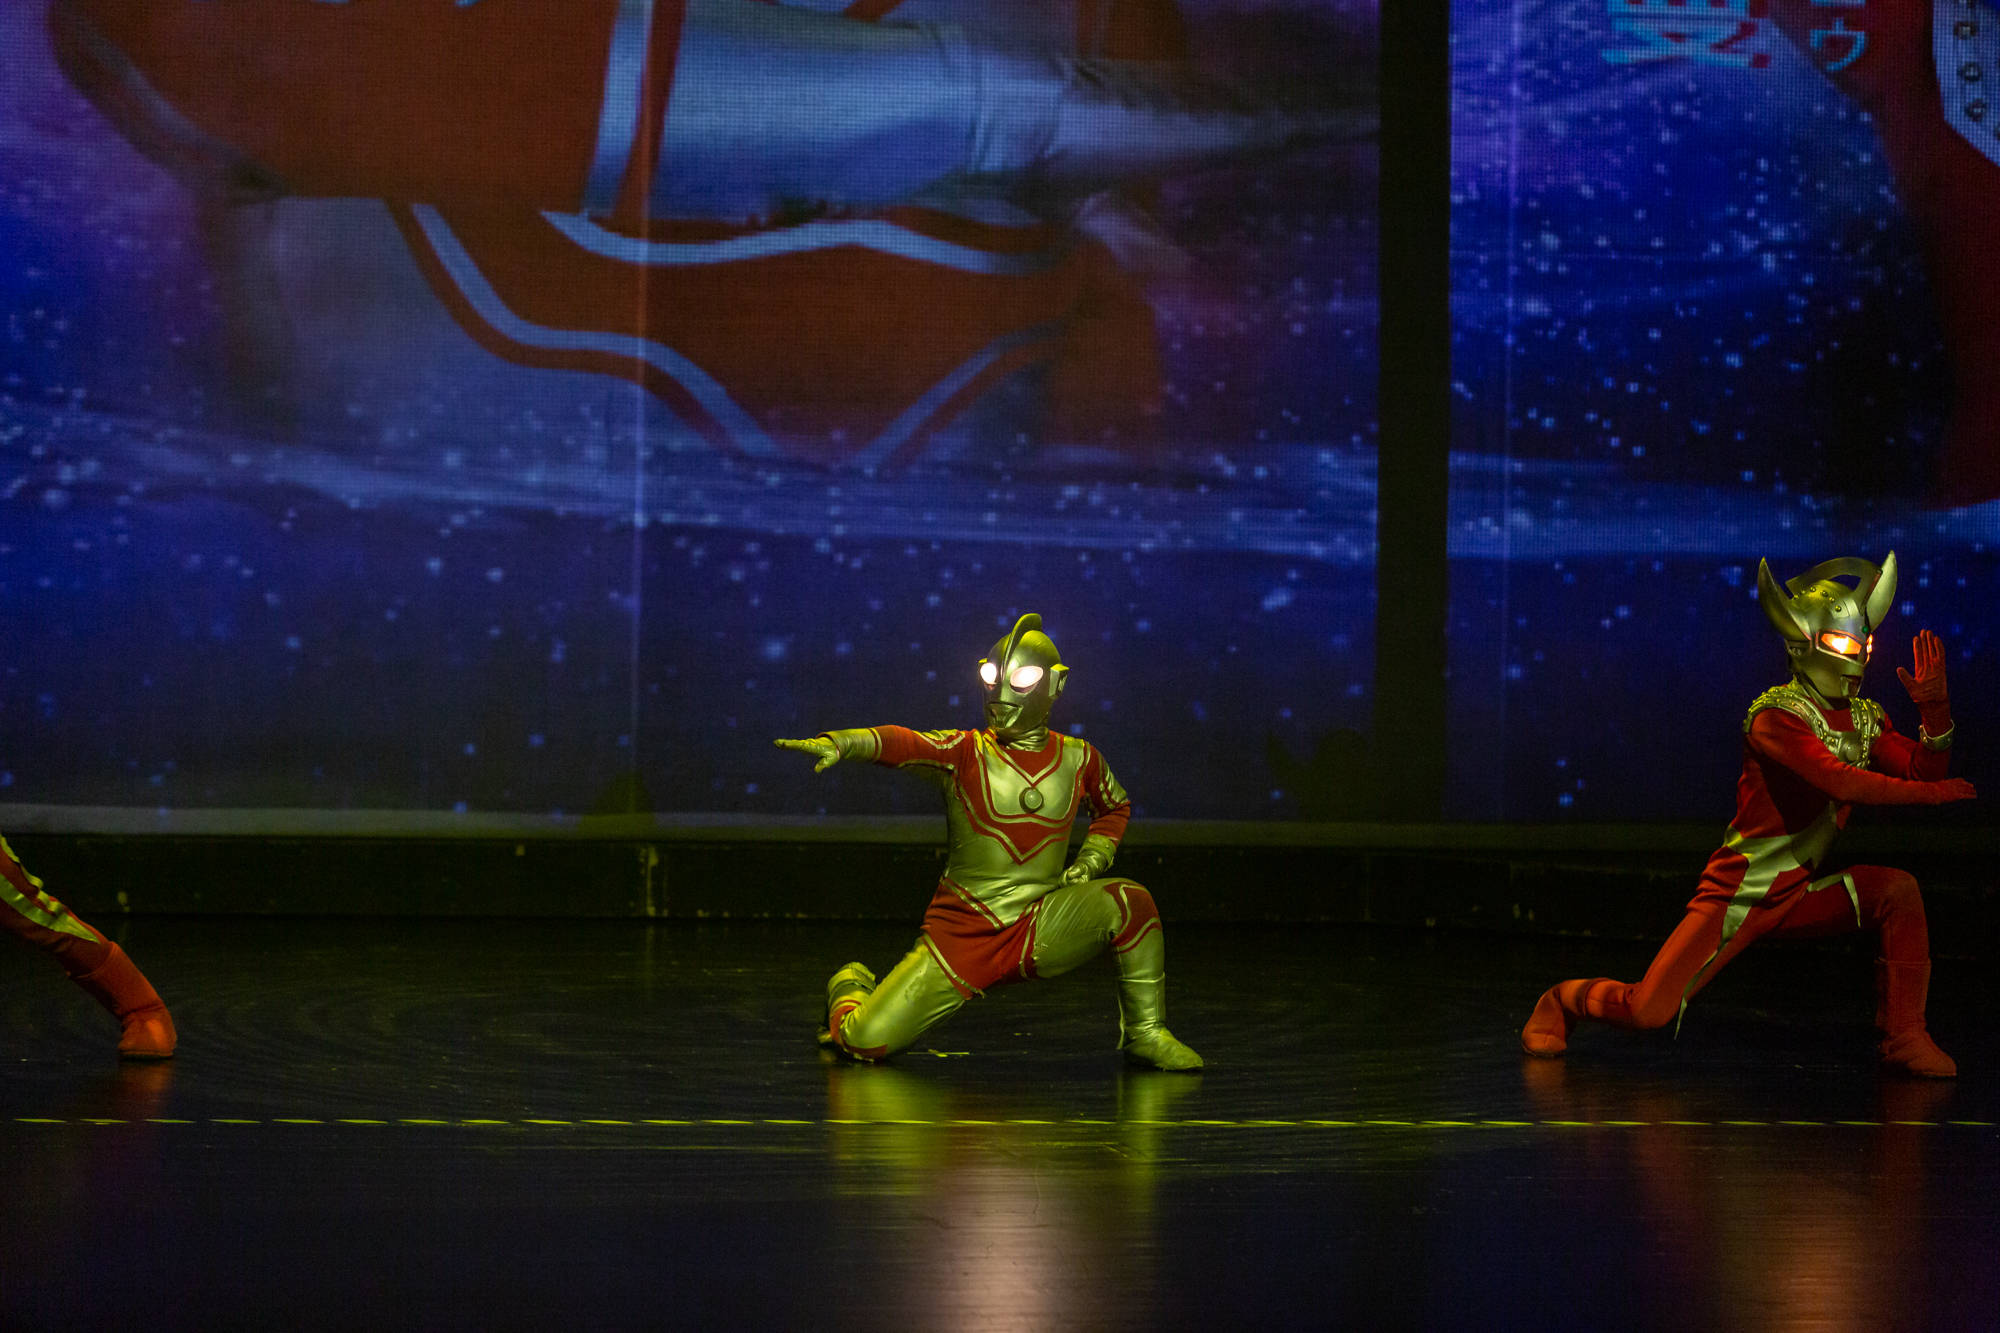 大型实景舞台剧《奥特曼宇宙之光》在滨州保利大剧院精彩上演